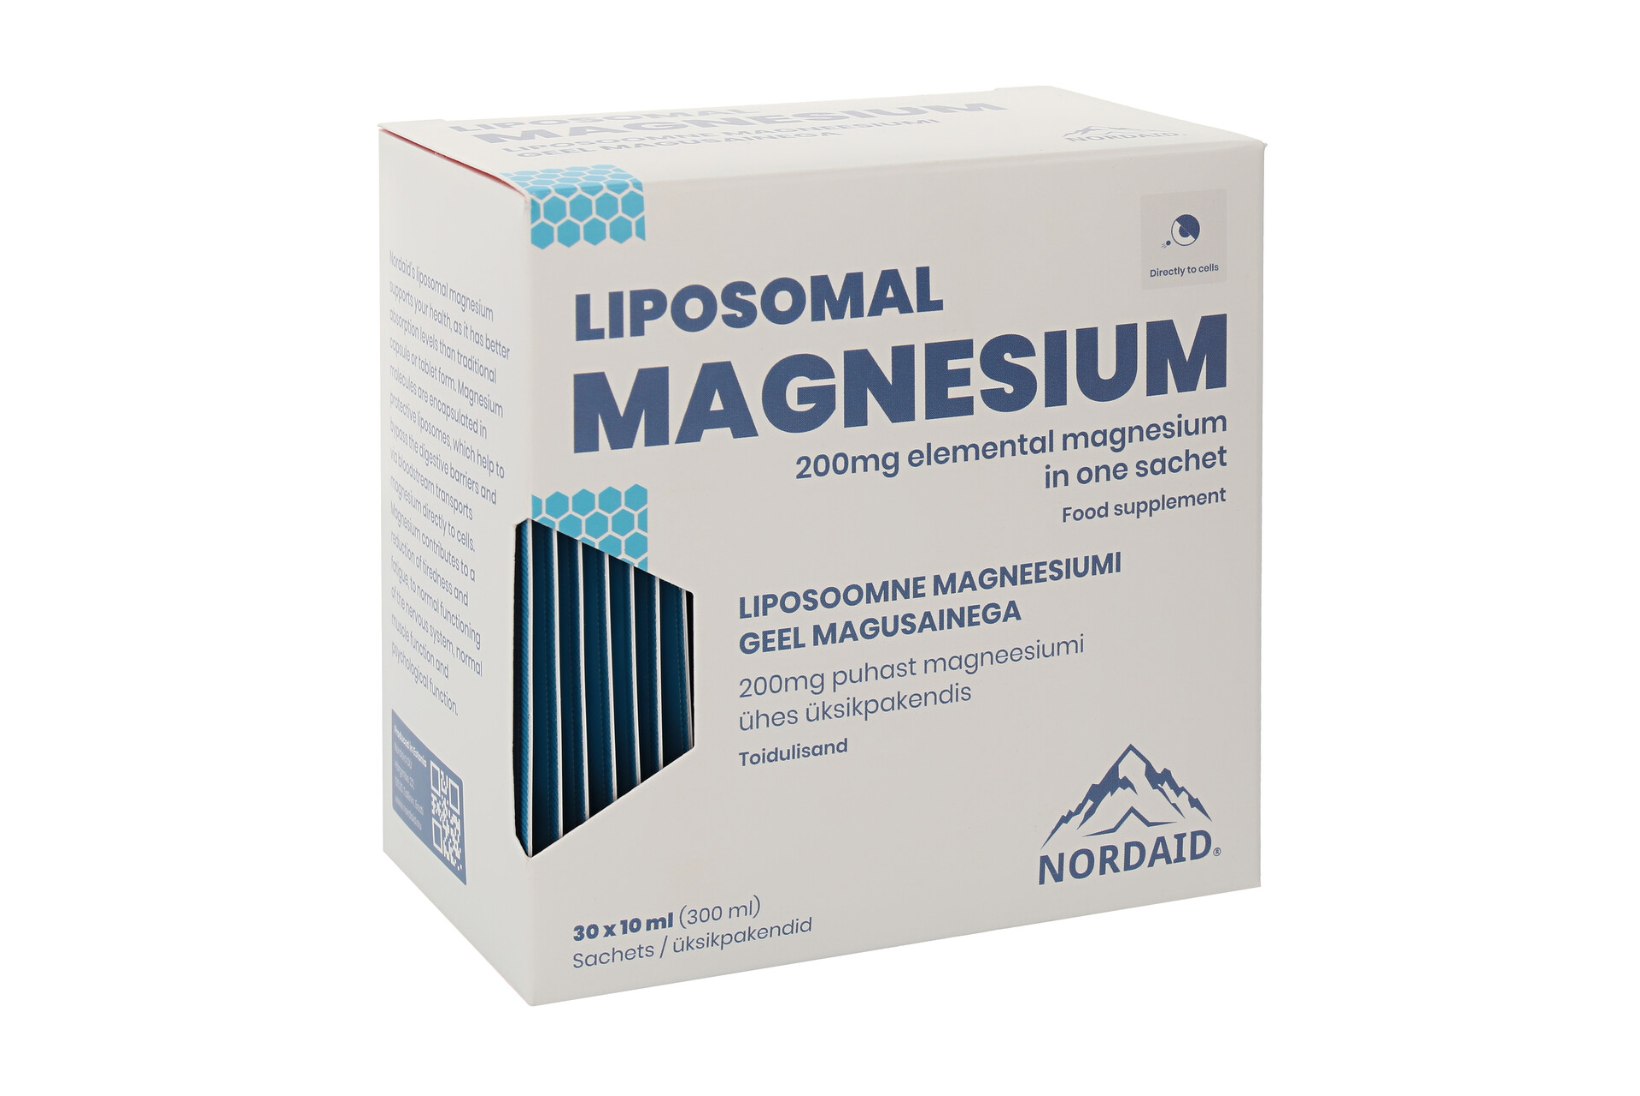 Kui ükski magneesium ei aidanud, siis proovi liposoomset magneesiumi, kus ühes molekulis on tsitraat-malaat